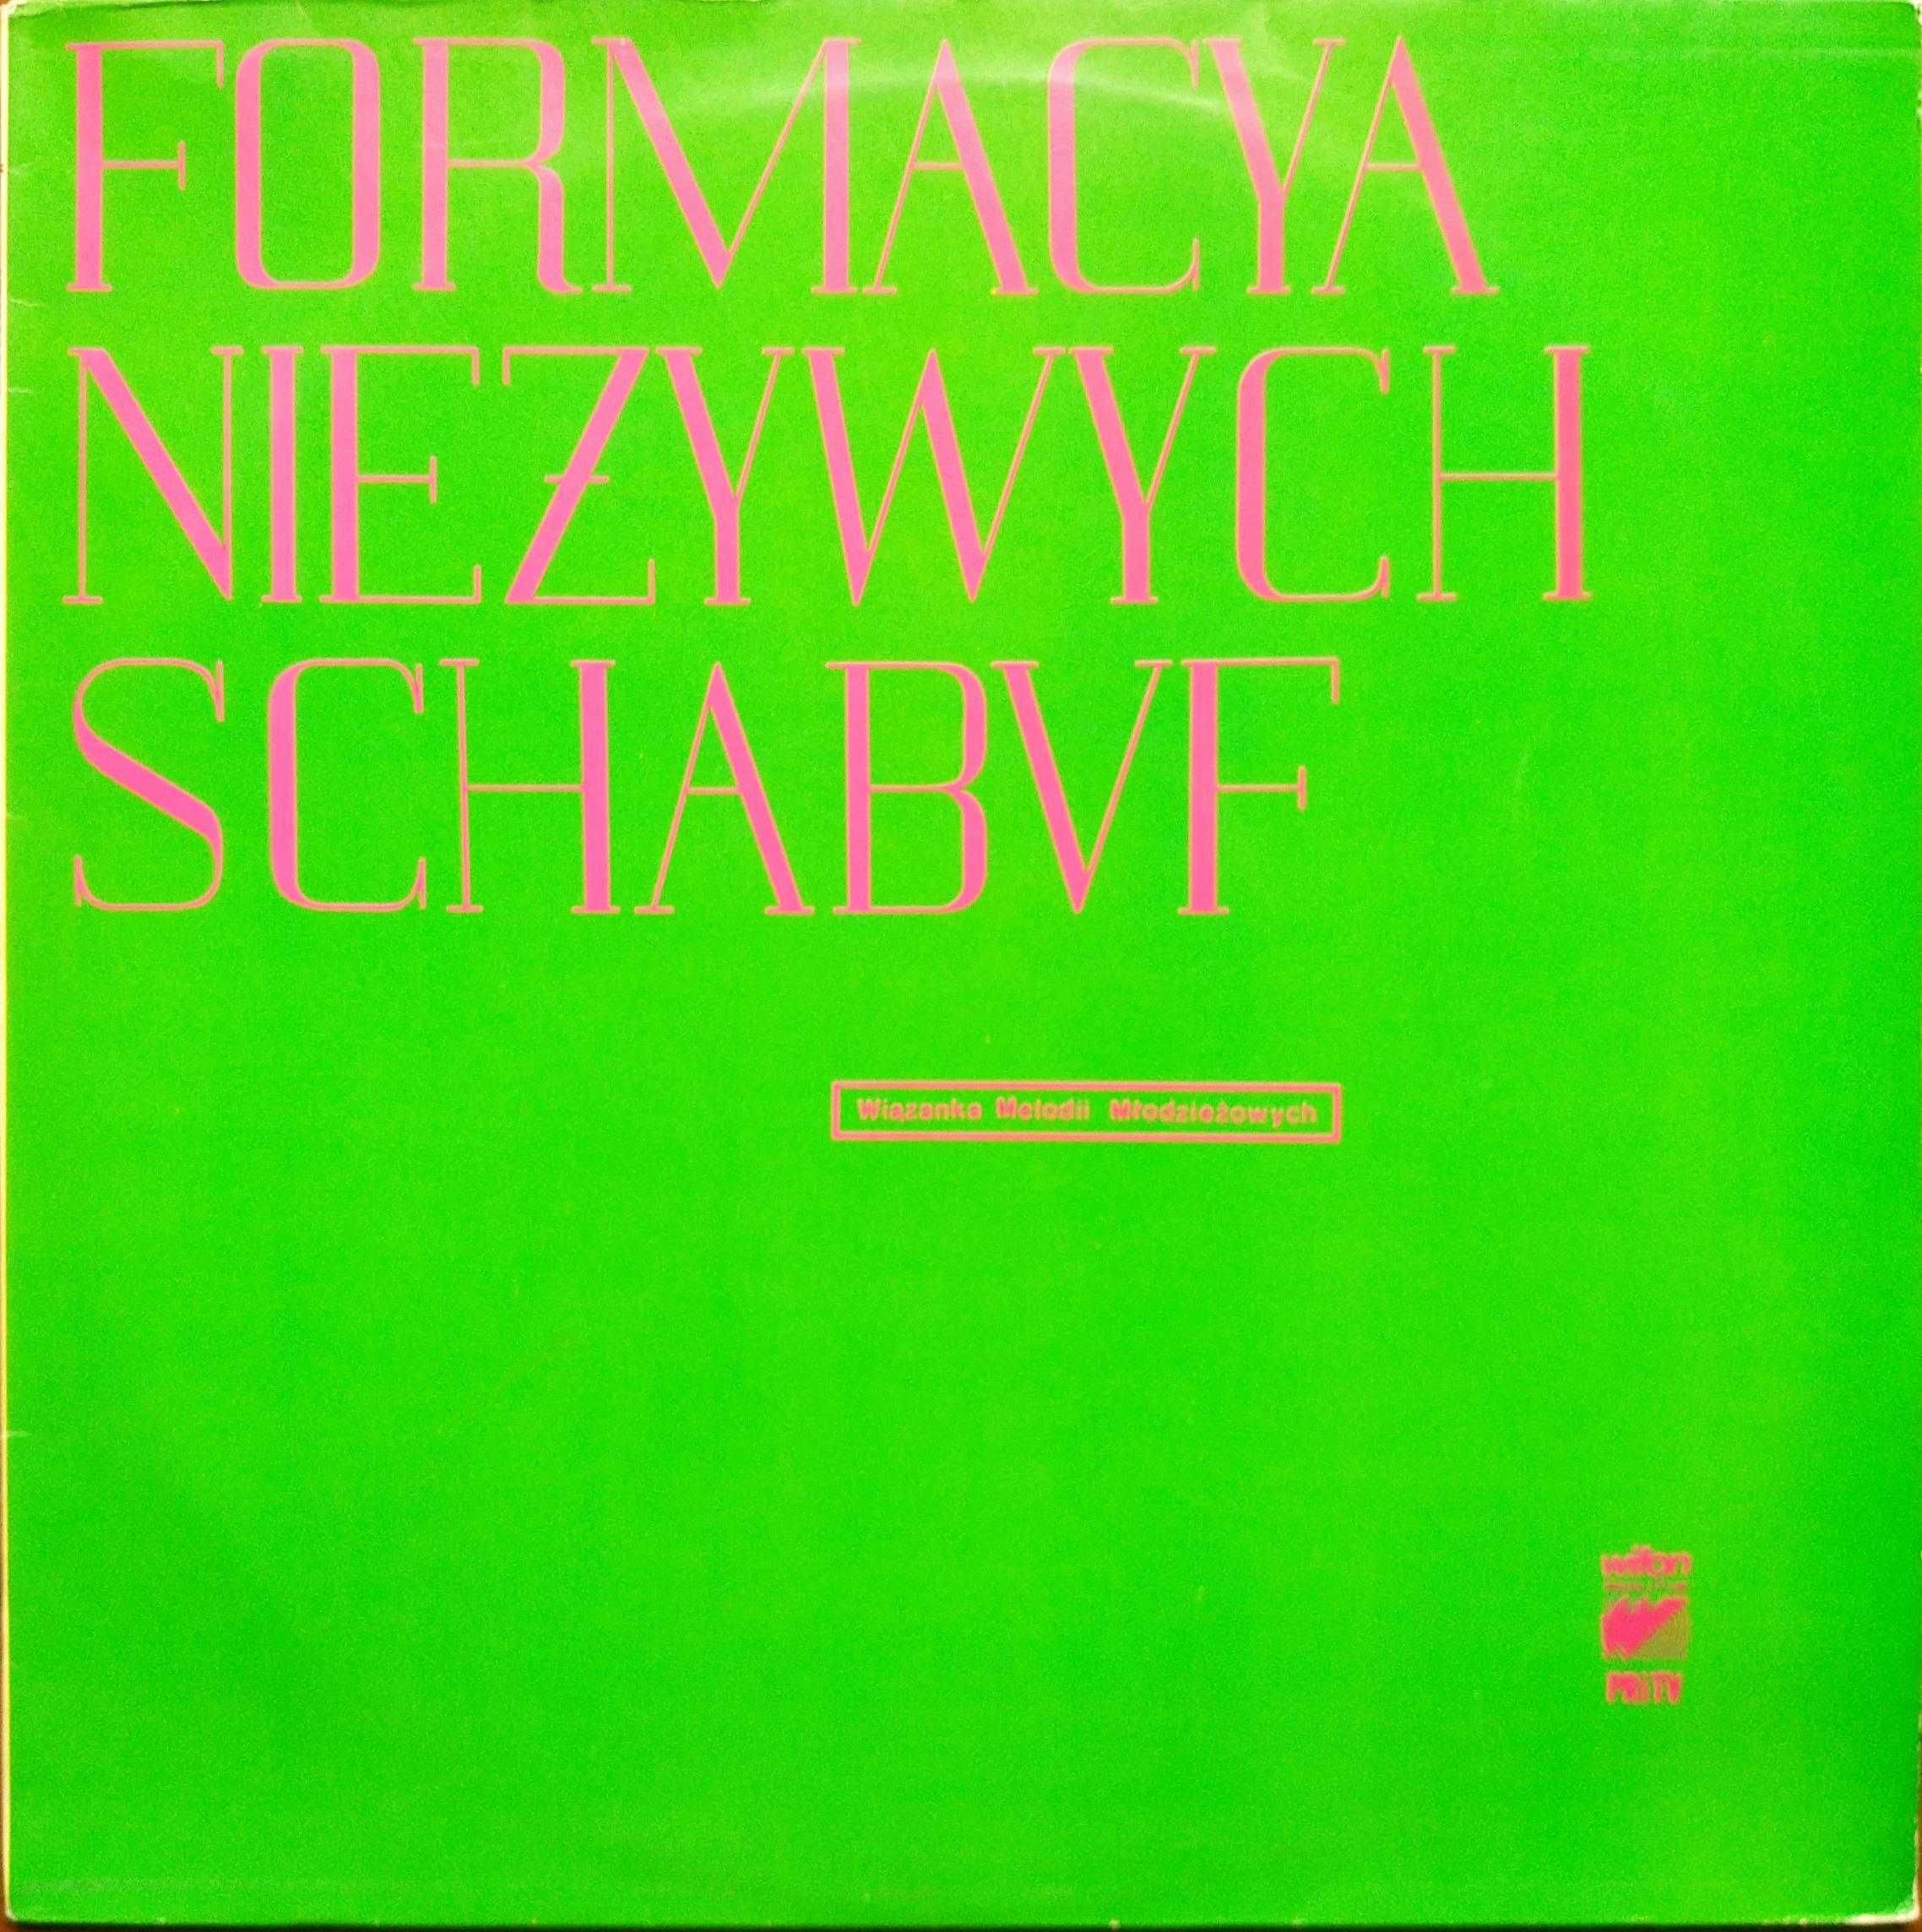 Formacya nieżywych schabuf - płyta winylowa Wifon 1989  (EX-/BDB+)